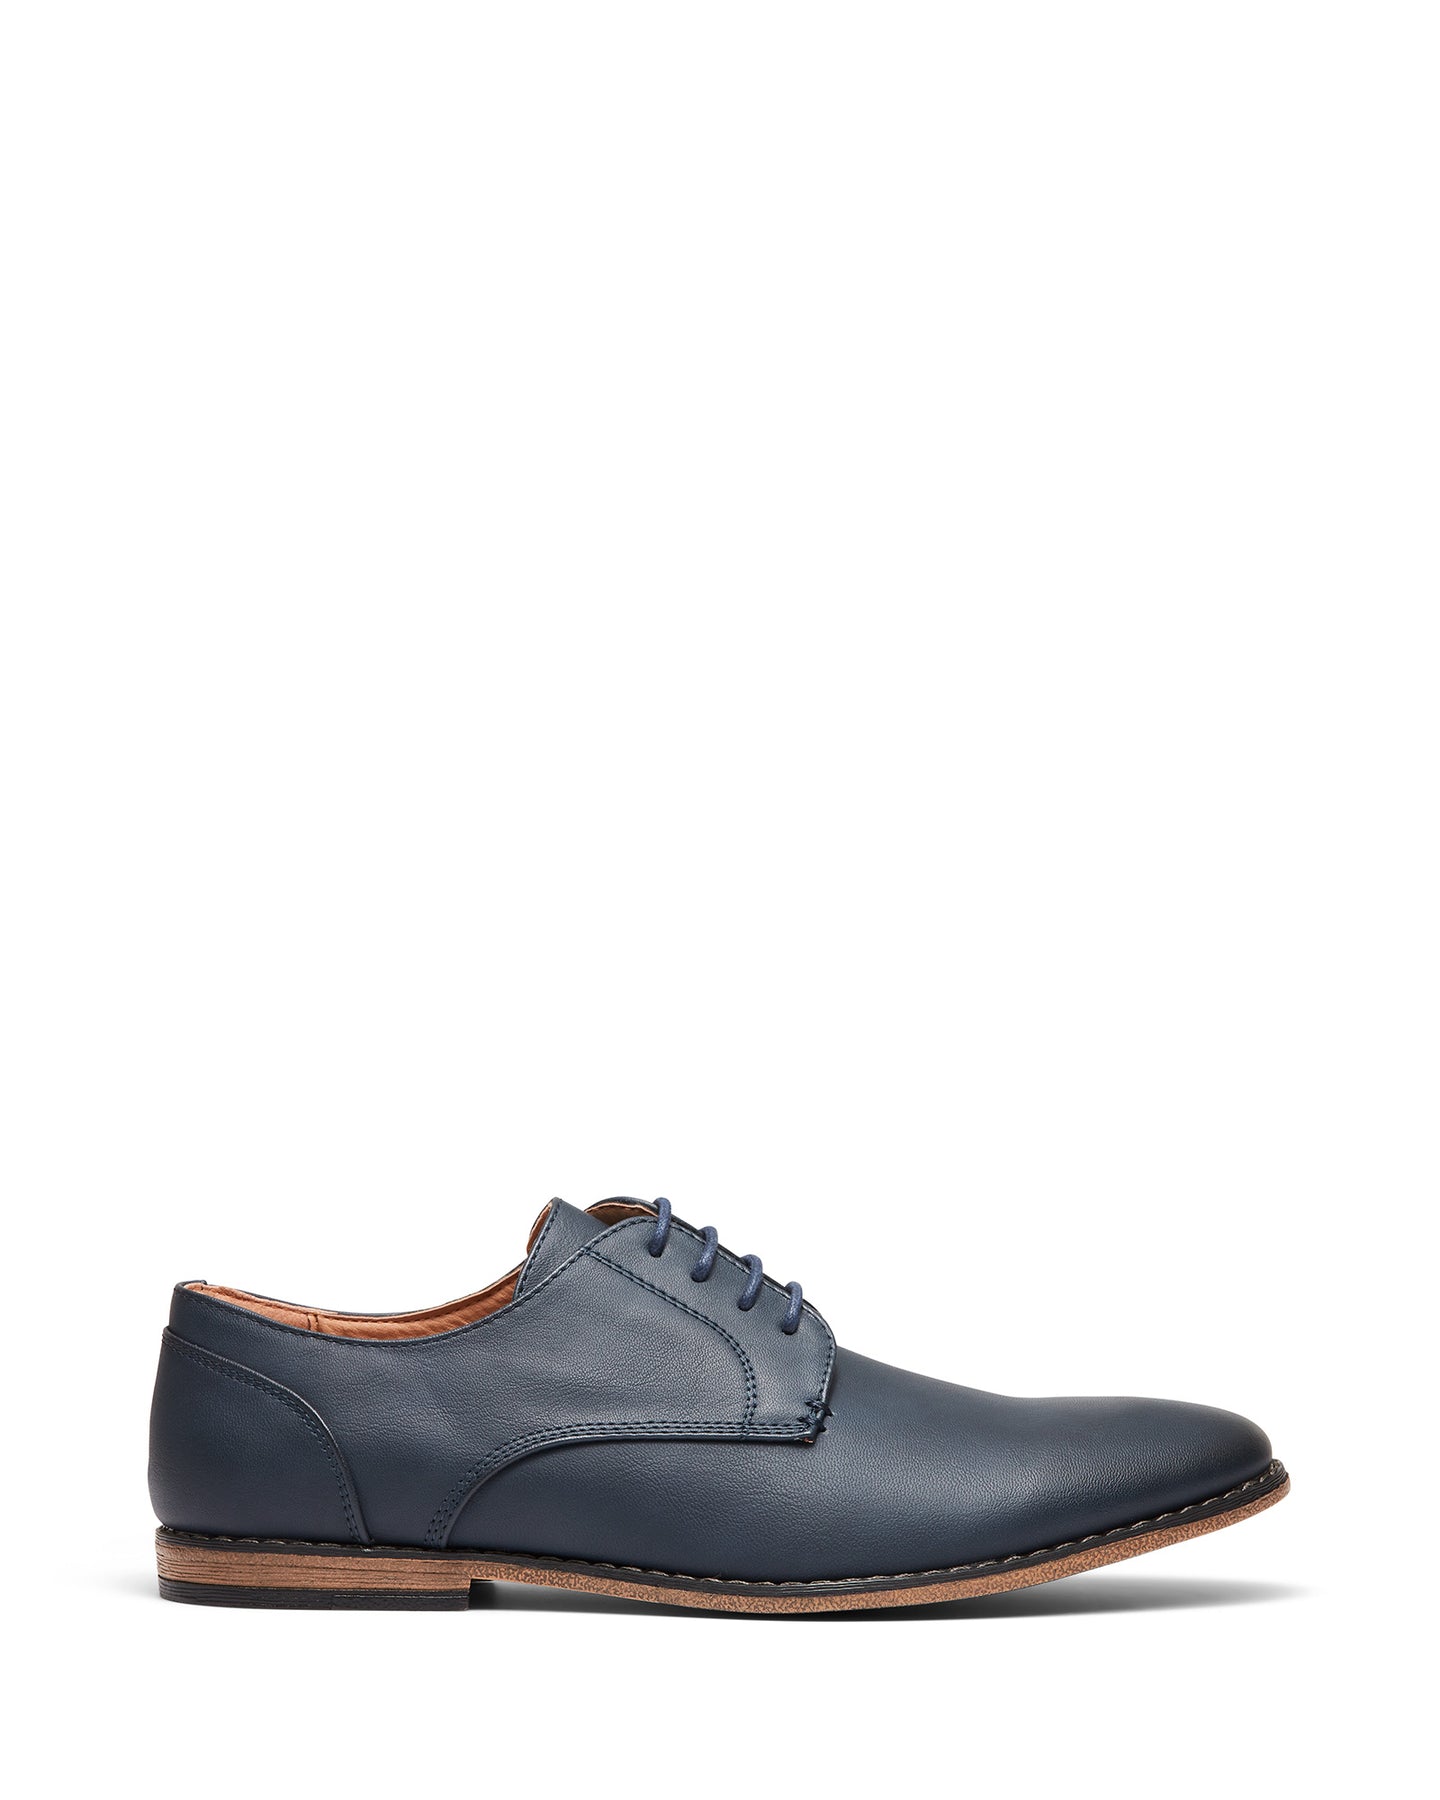 Uncut Shoes Marcus Navy | Men's Dress Shoe | Derby | Lace Up | Work